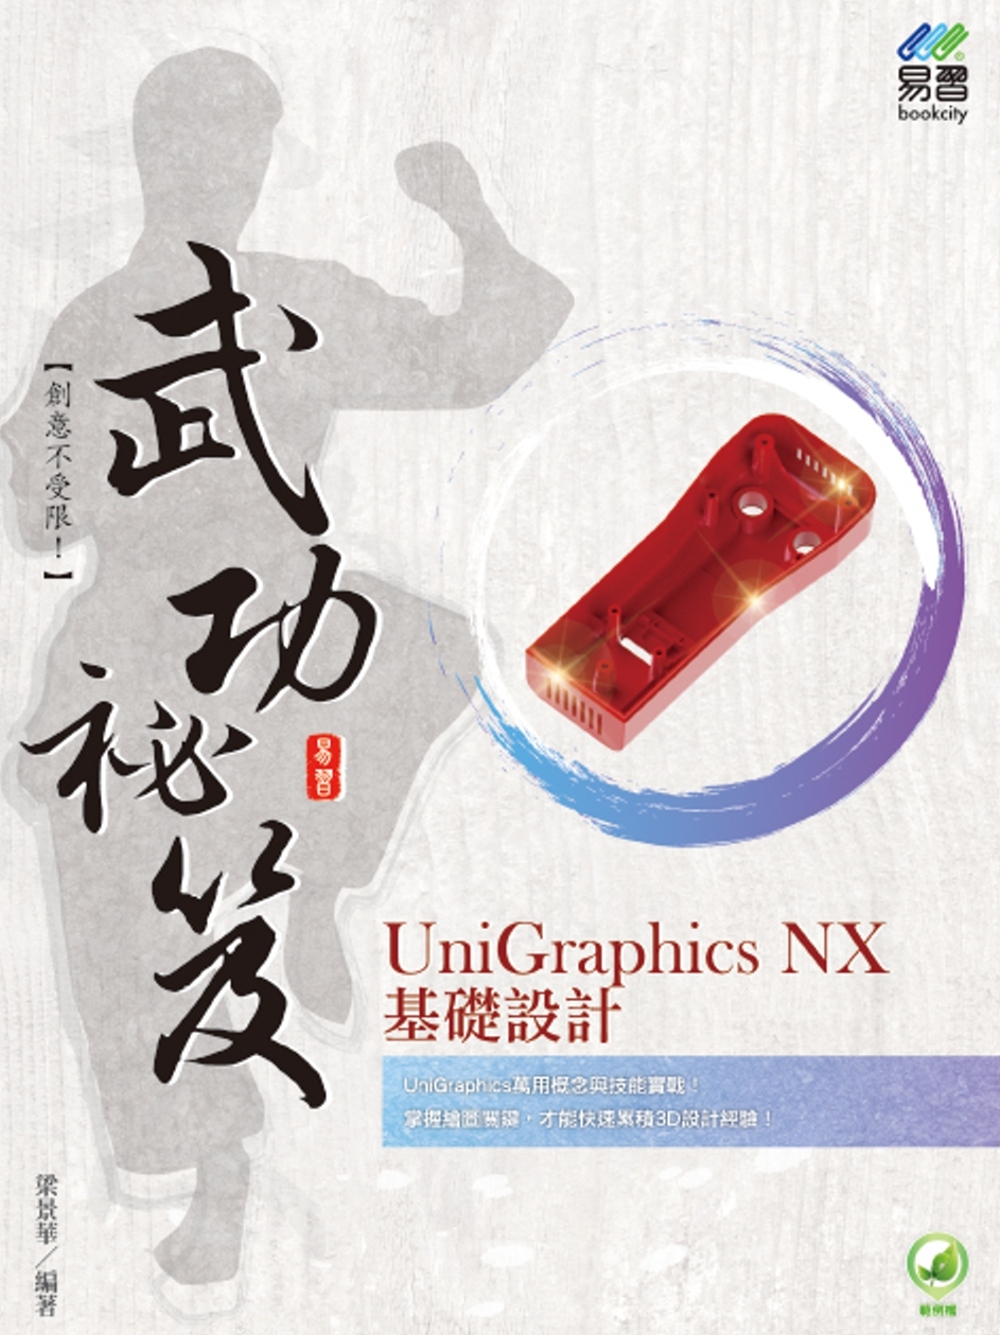 UniGraphics NX 基礎設計 武功祕笈